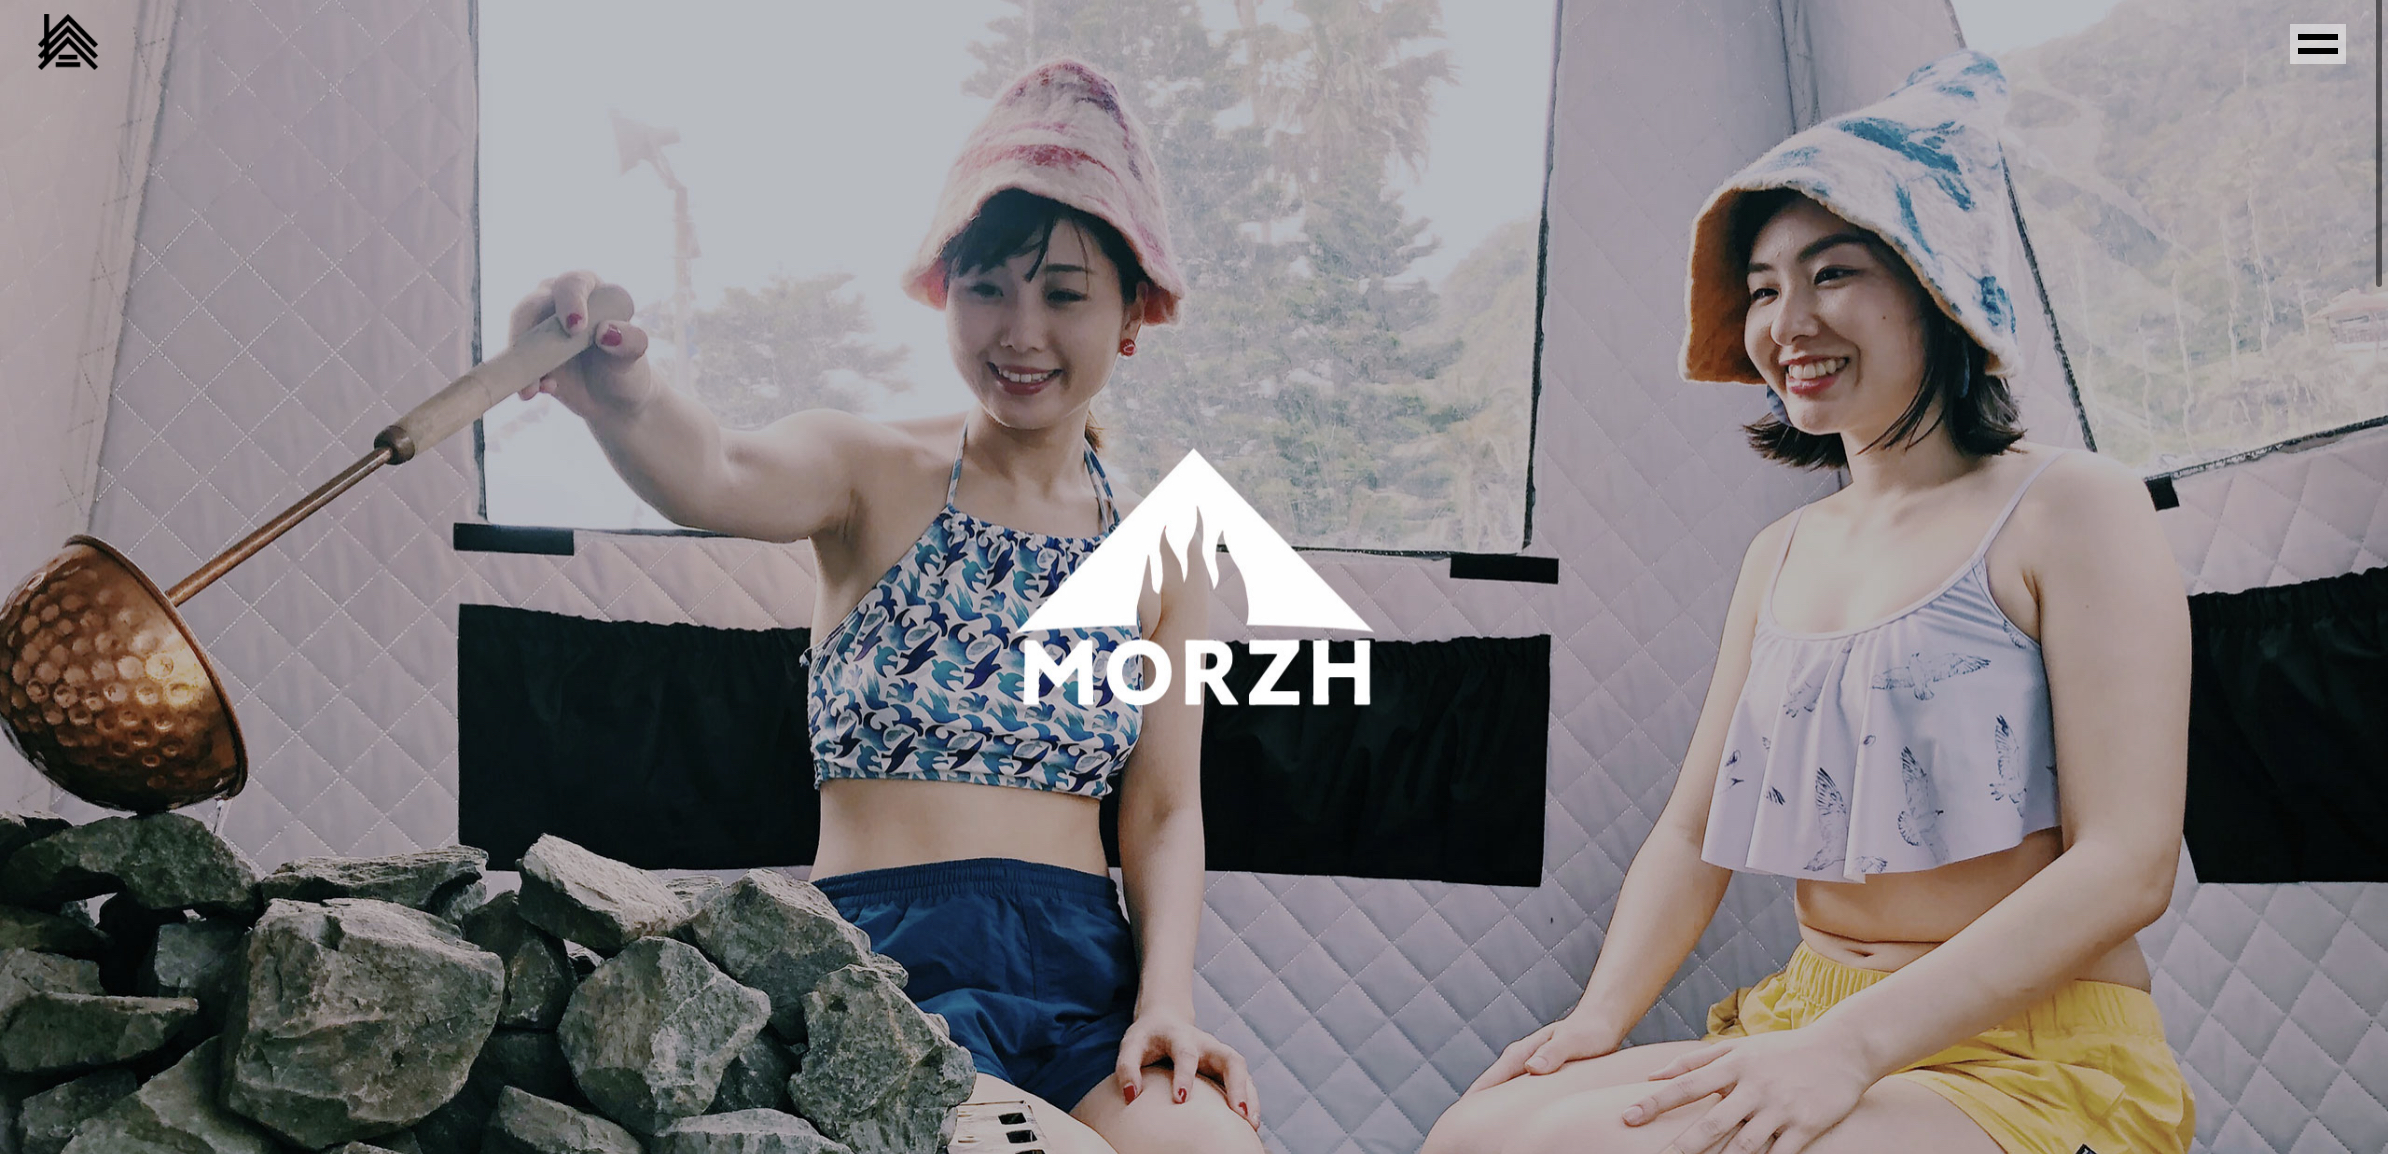 MORZH もマルチツールで、普通のテント使いとか、焚き火、BBQ兼ねたりしたスマホみたいな存在になってほしいと願う。そういうのは他メーカーの仕事かな。